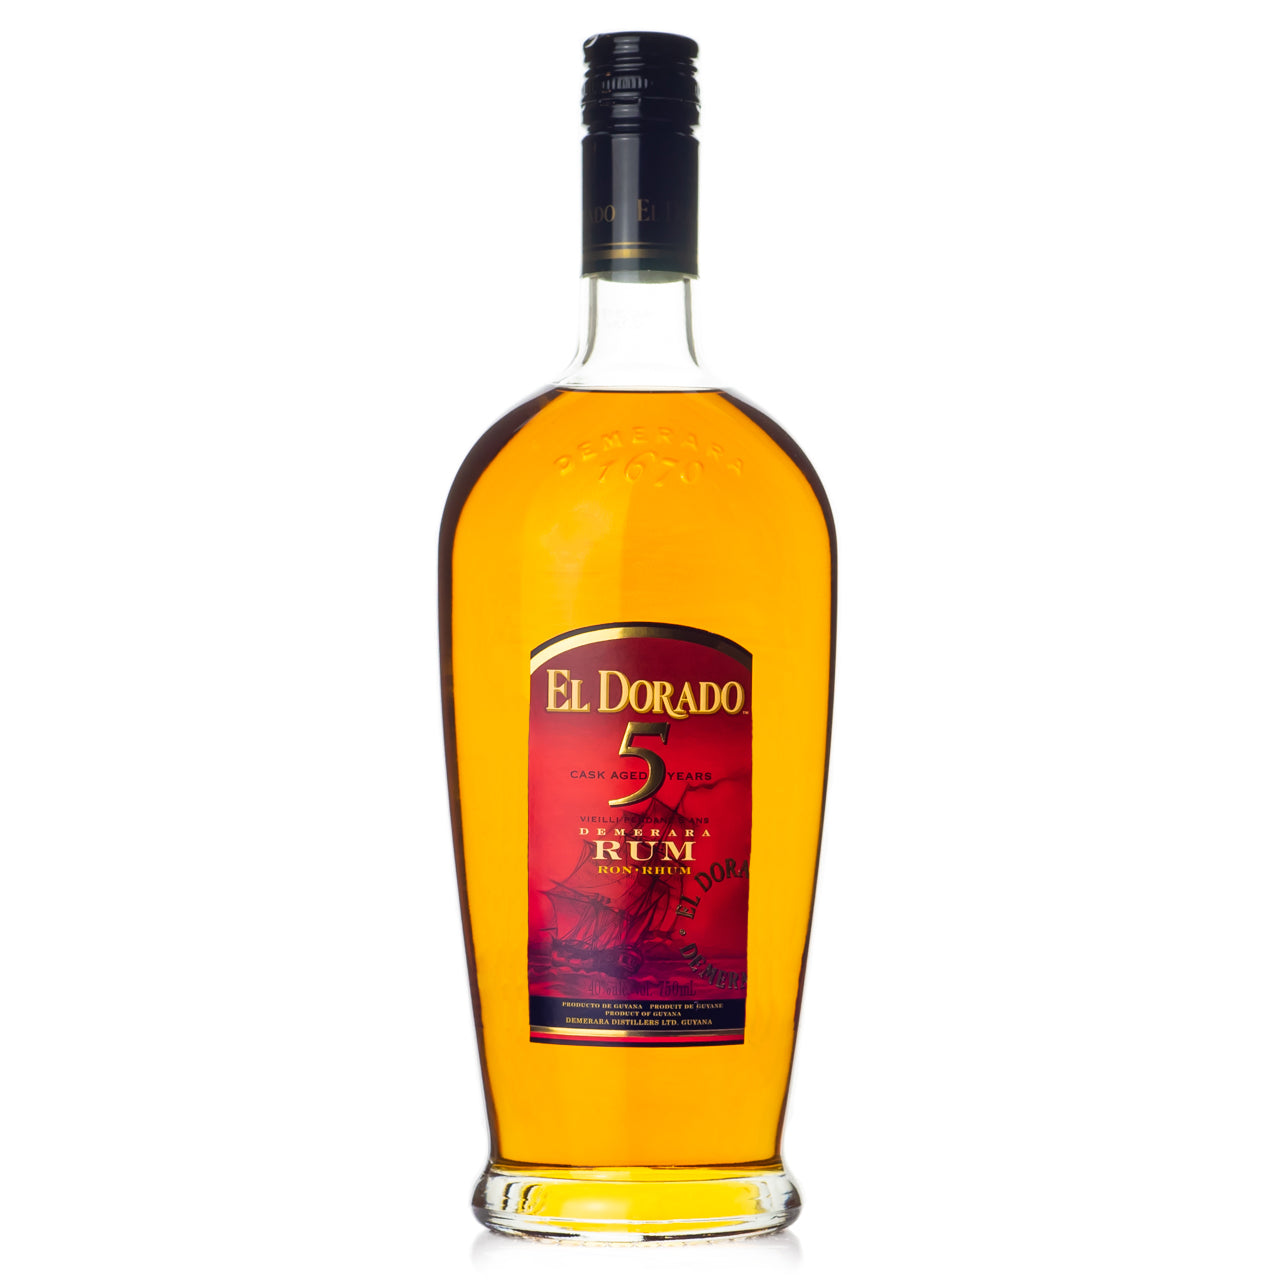 El Dorado Cask Aged 5 Year Rum